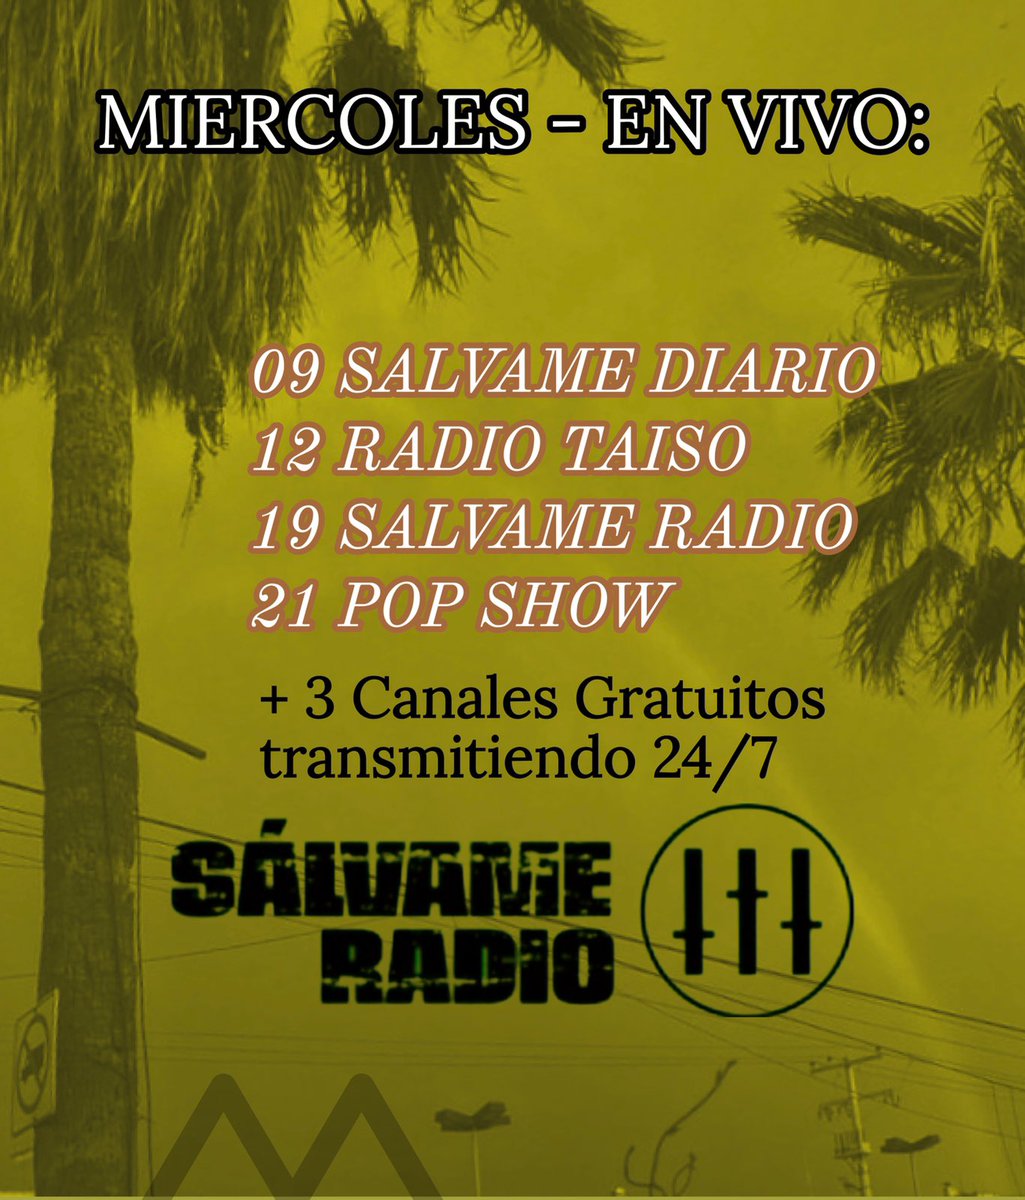 Miércoles en #SalvameRadio

#HagamosNuestraVoluntad